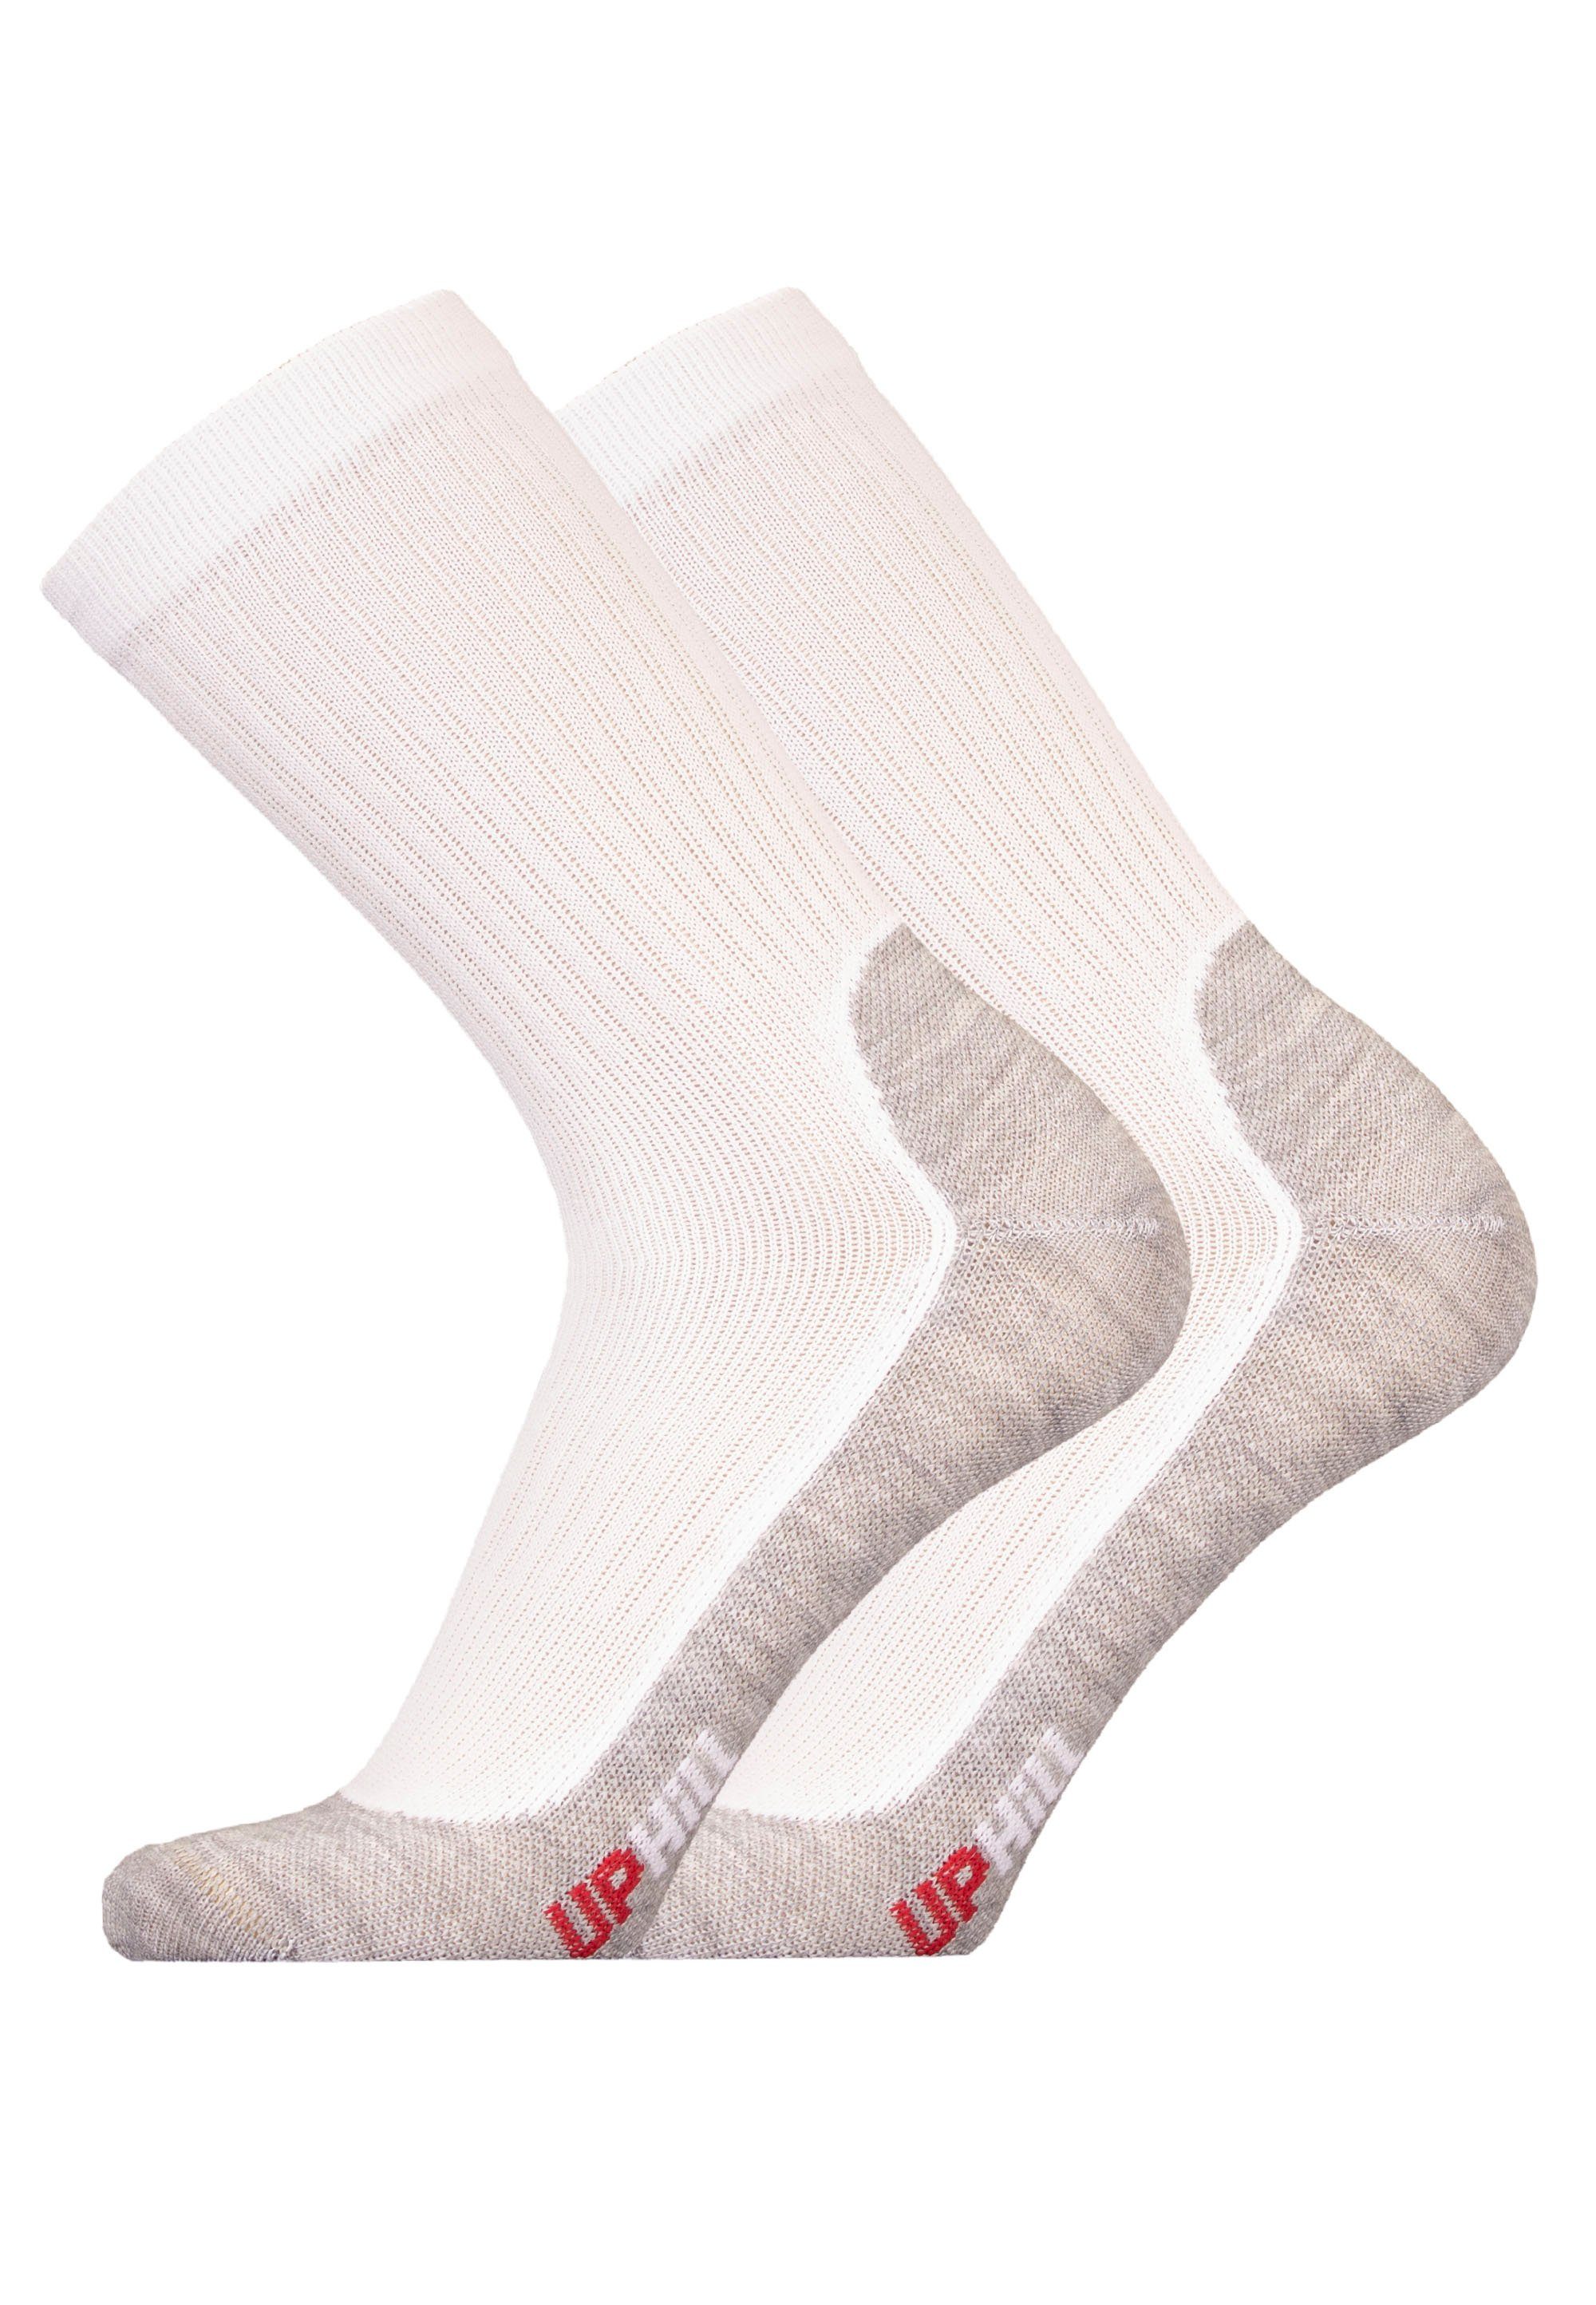 UphillSport Socken WINTER XC 2er Pack (2-Paar) mit atmungsaktiver Funktion weiß-grau